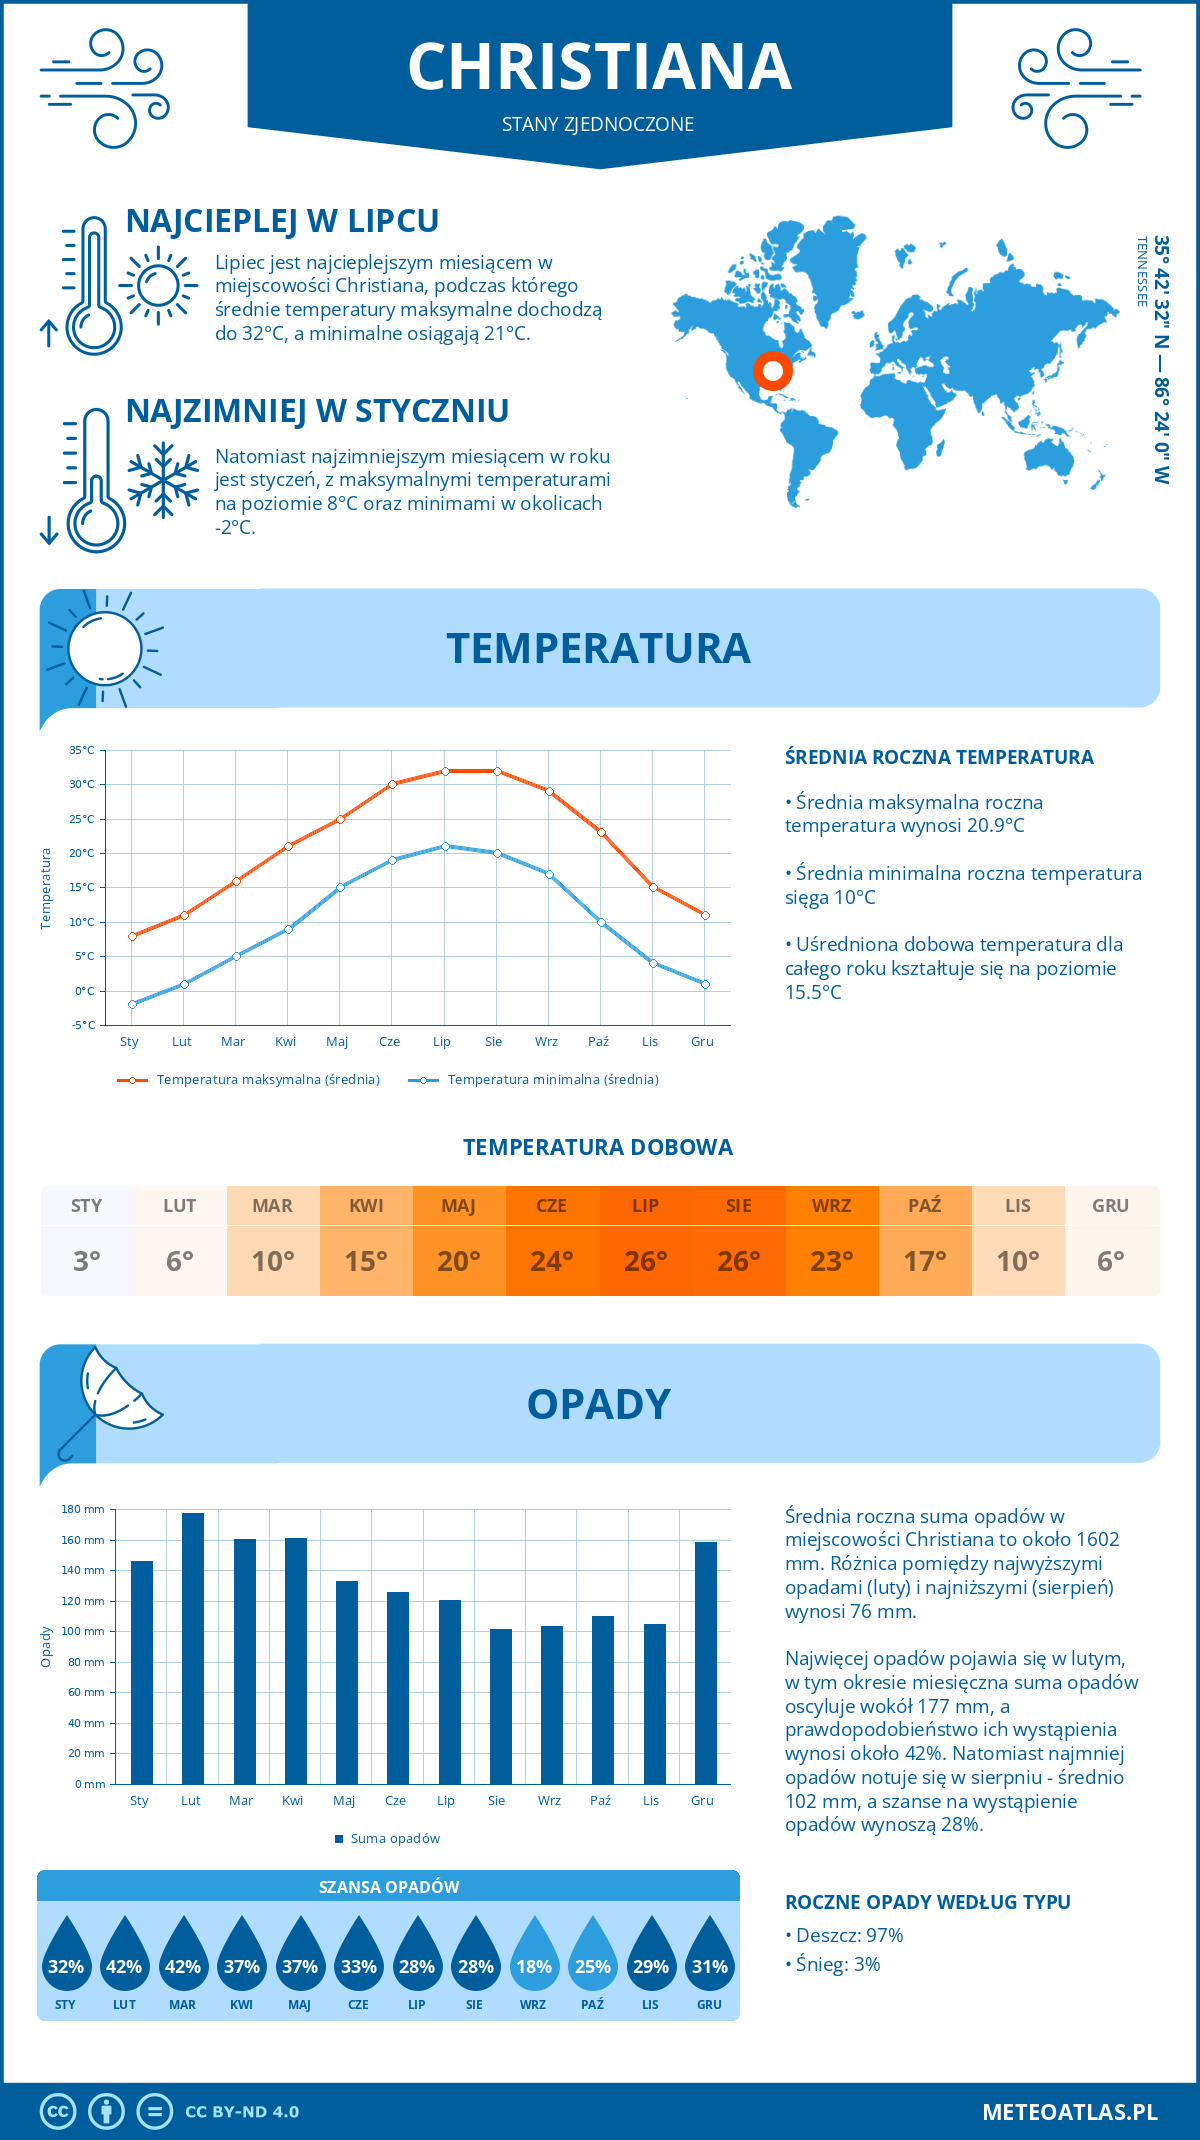 Pogoda Christiana (Stany Zjednoczone). Temperatura oraz opady.